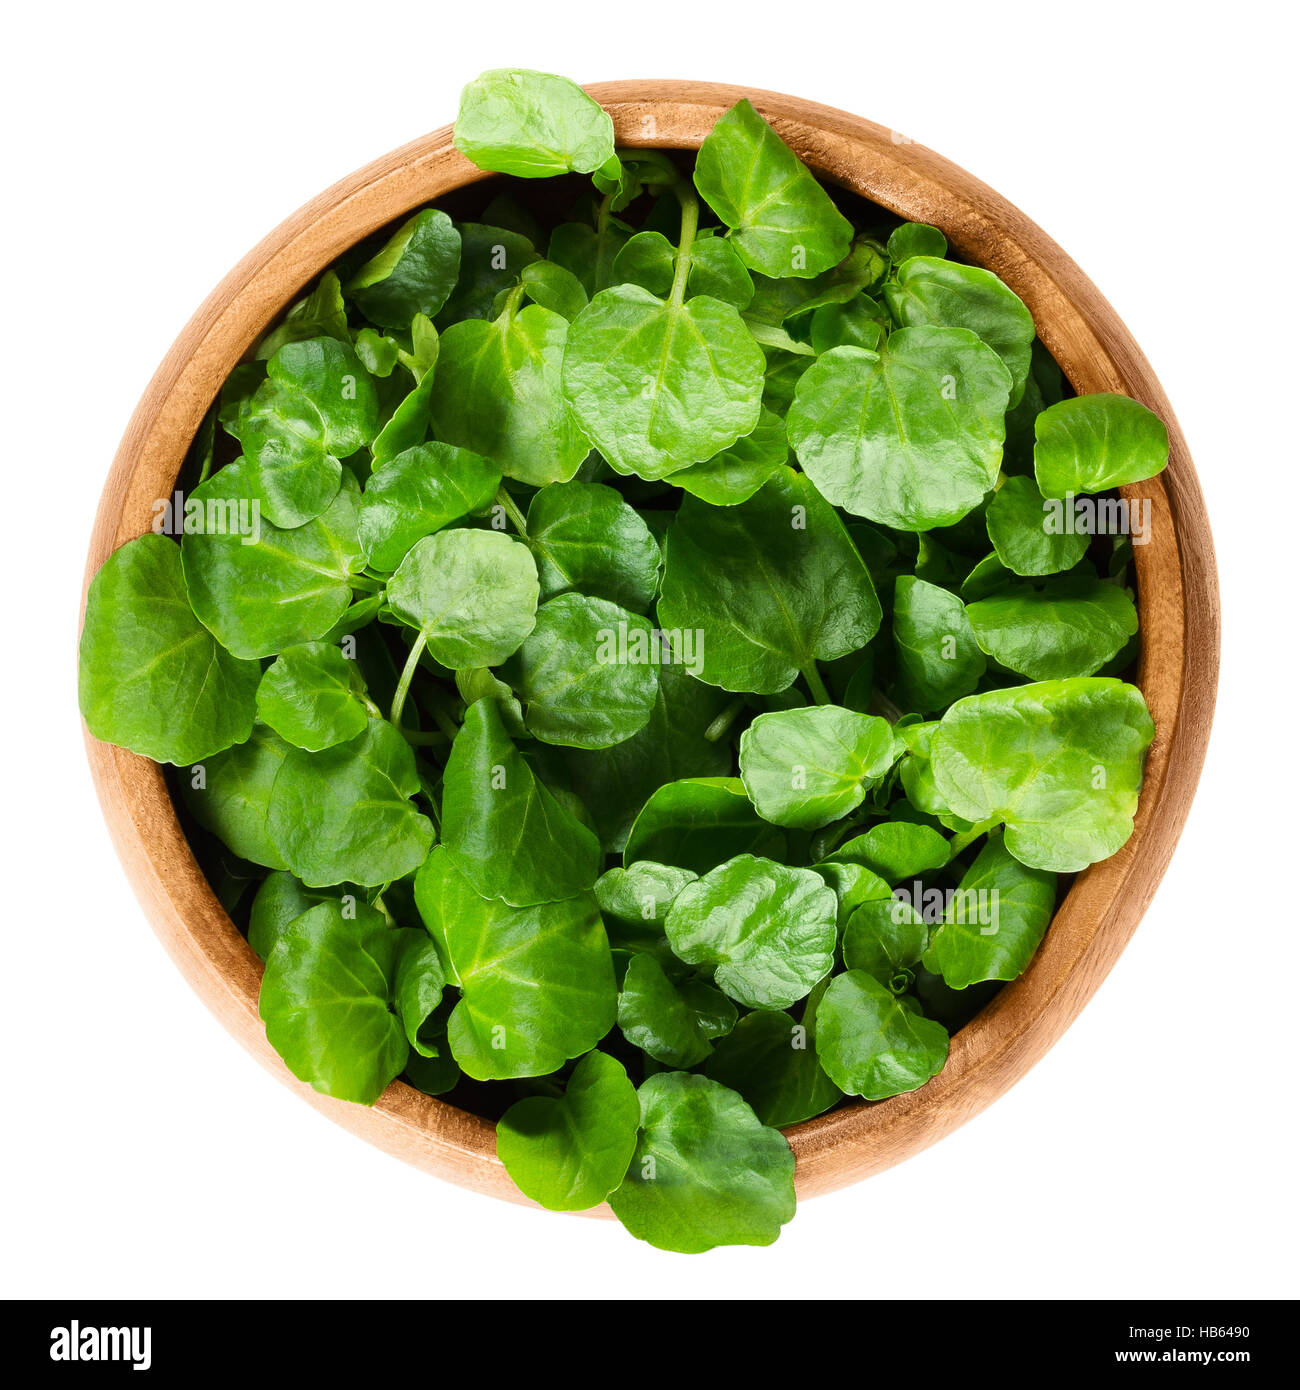 Il crescione in ciotola di legno. Nasturtium officinale, un verde commestibile piante acquatiche e vegetali a foglia, utilizzati nelle insalate o nelle zuppe. Foto Stock